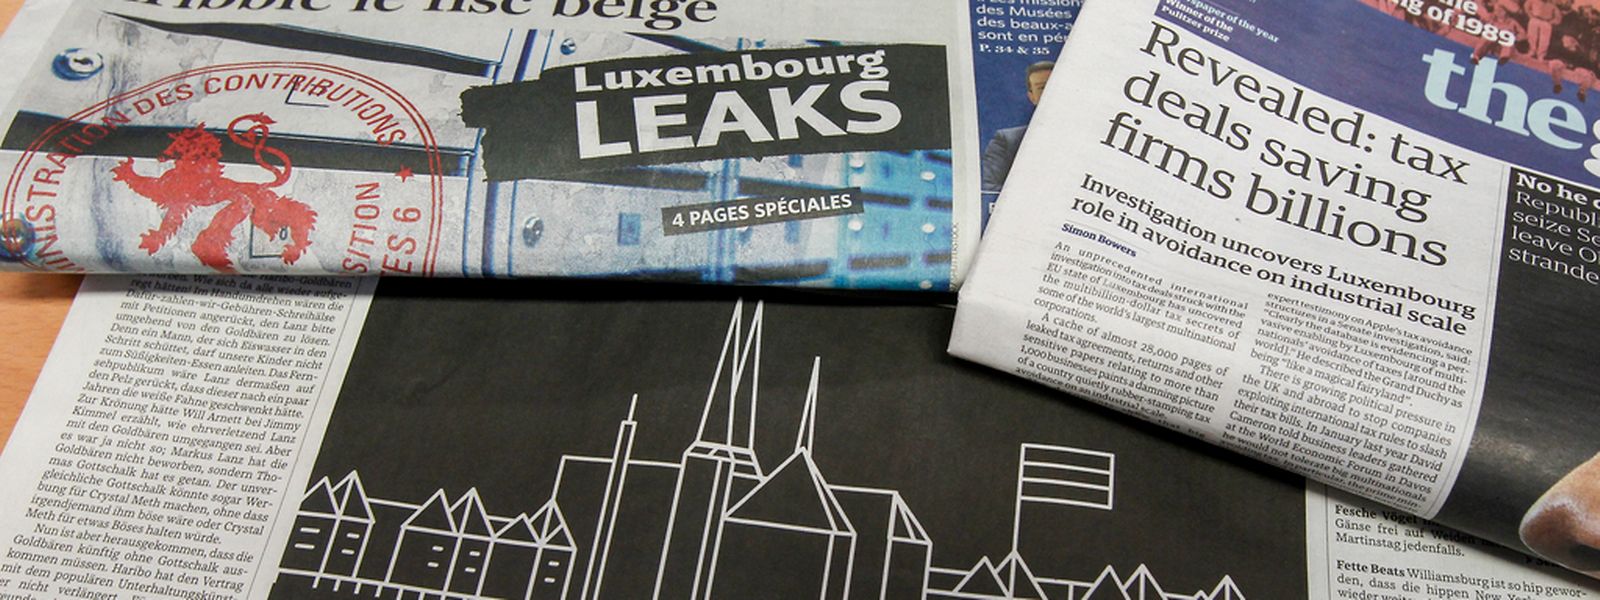 In großer Aufmachung berichten die internationalen Zeitungen über "LuxembourgLeaks".